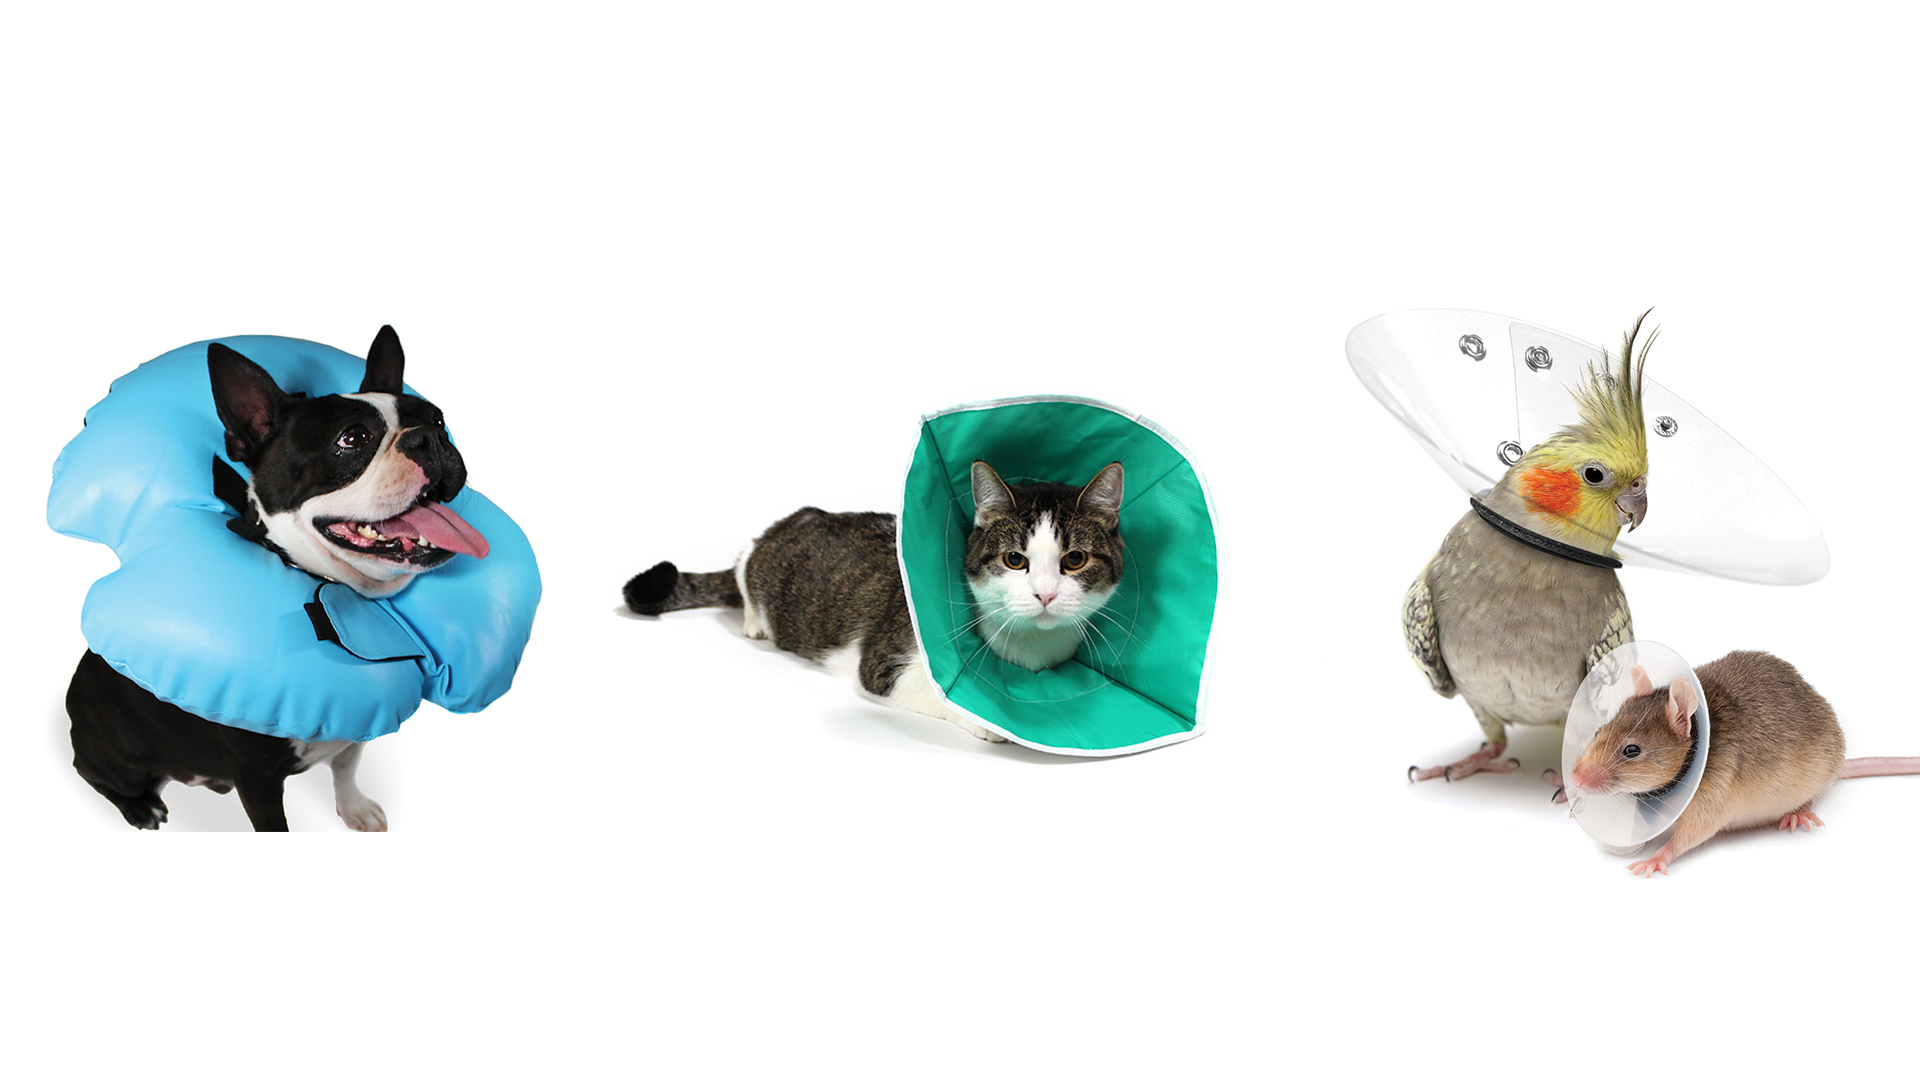 Distintas empresas confeccionan conos más cómodos o trajes postquirúrgicos para mascotas heridas o recién operadas